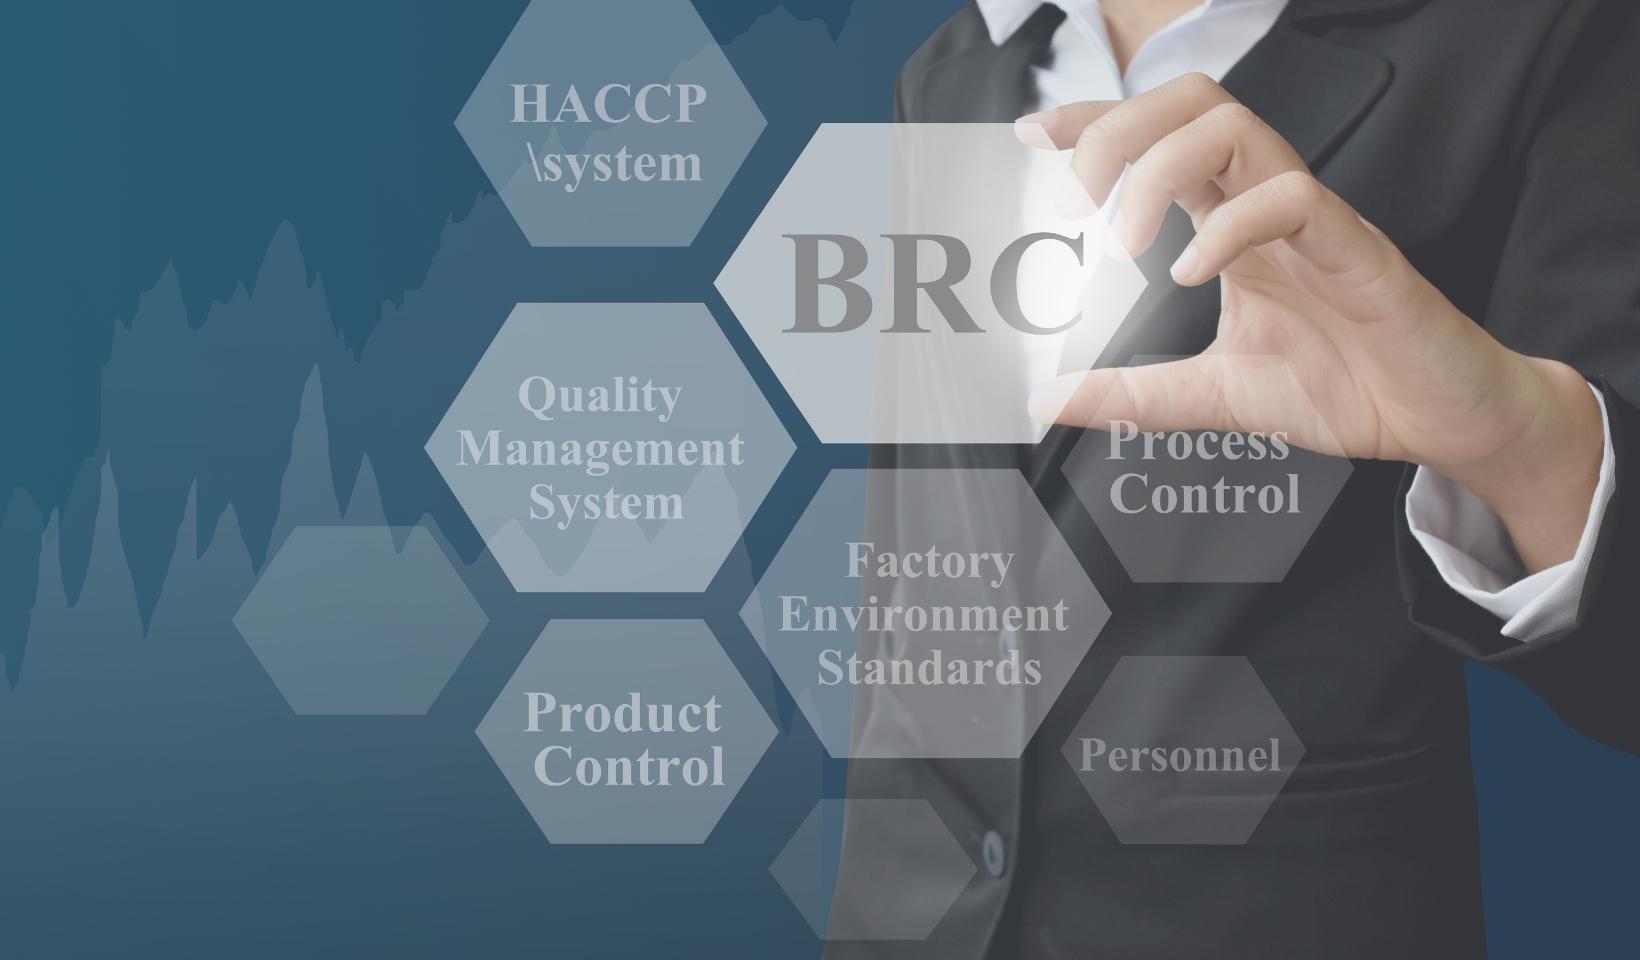 tiêu chuẩn BRC (British Retailer Consortium